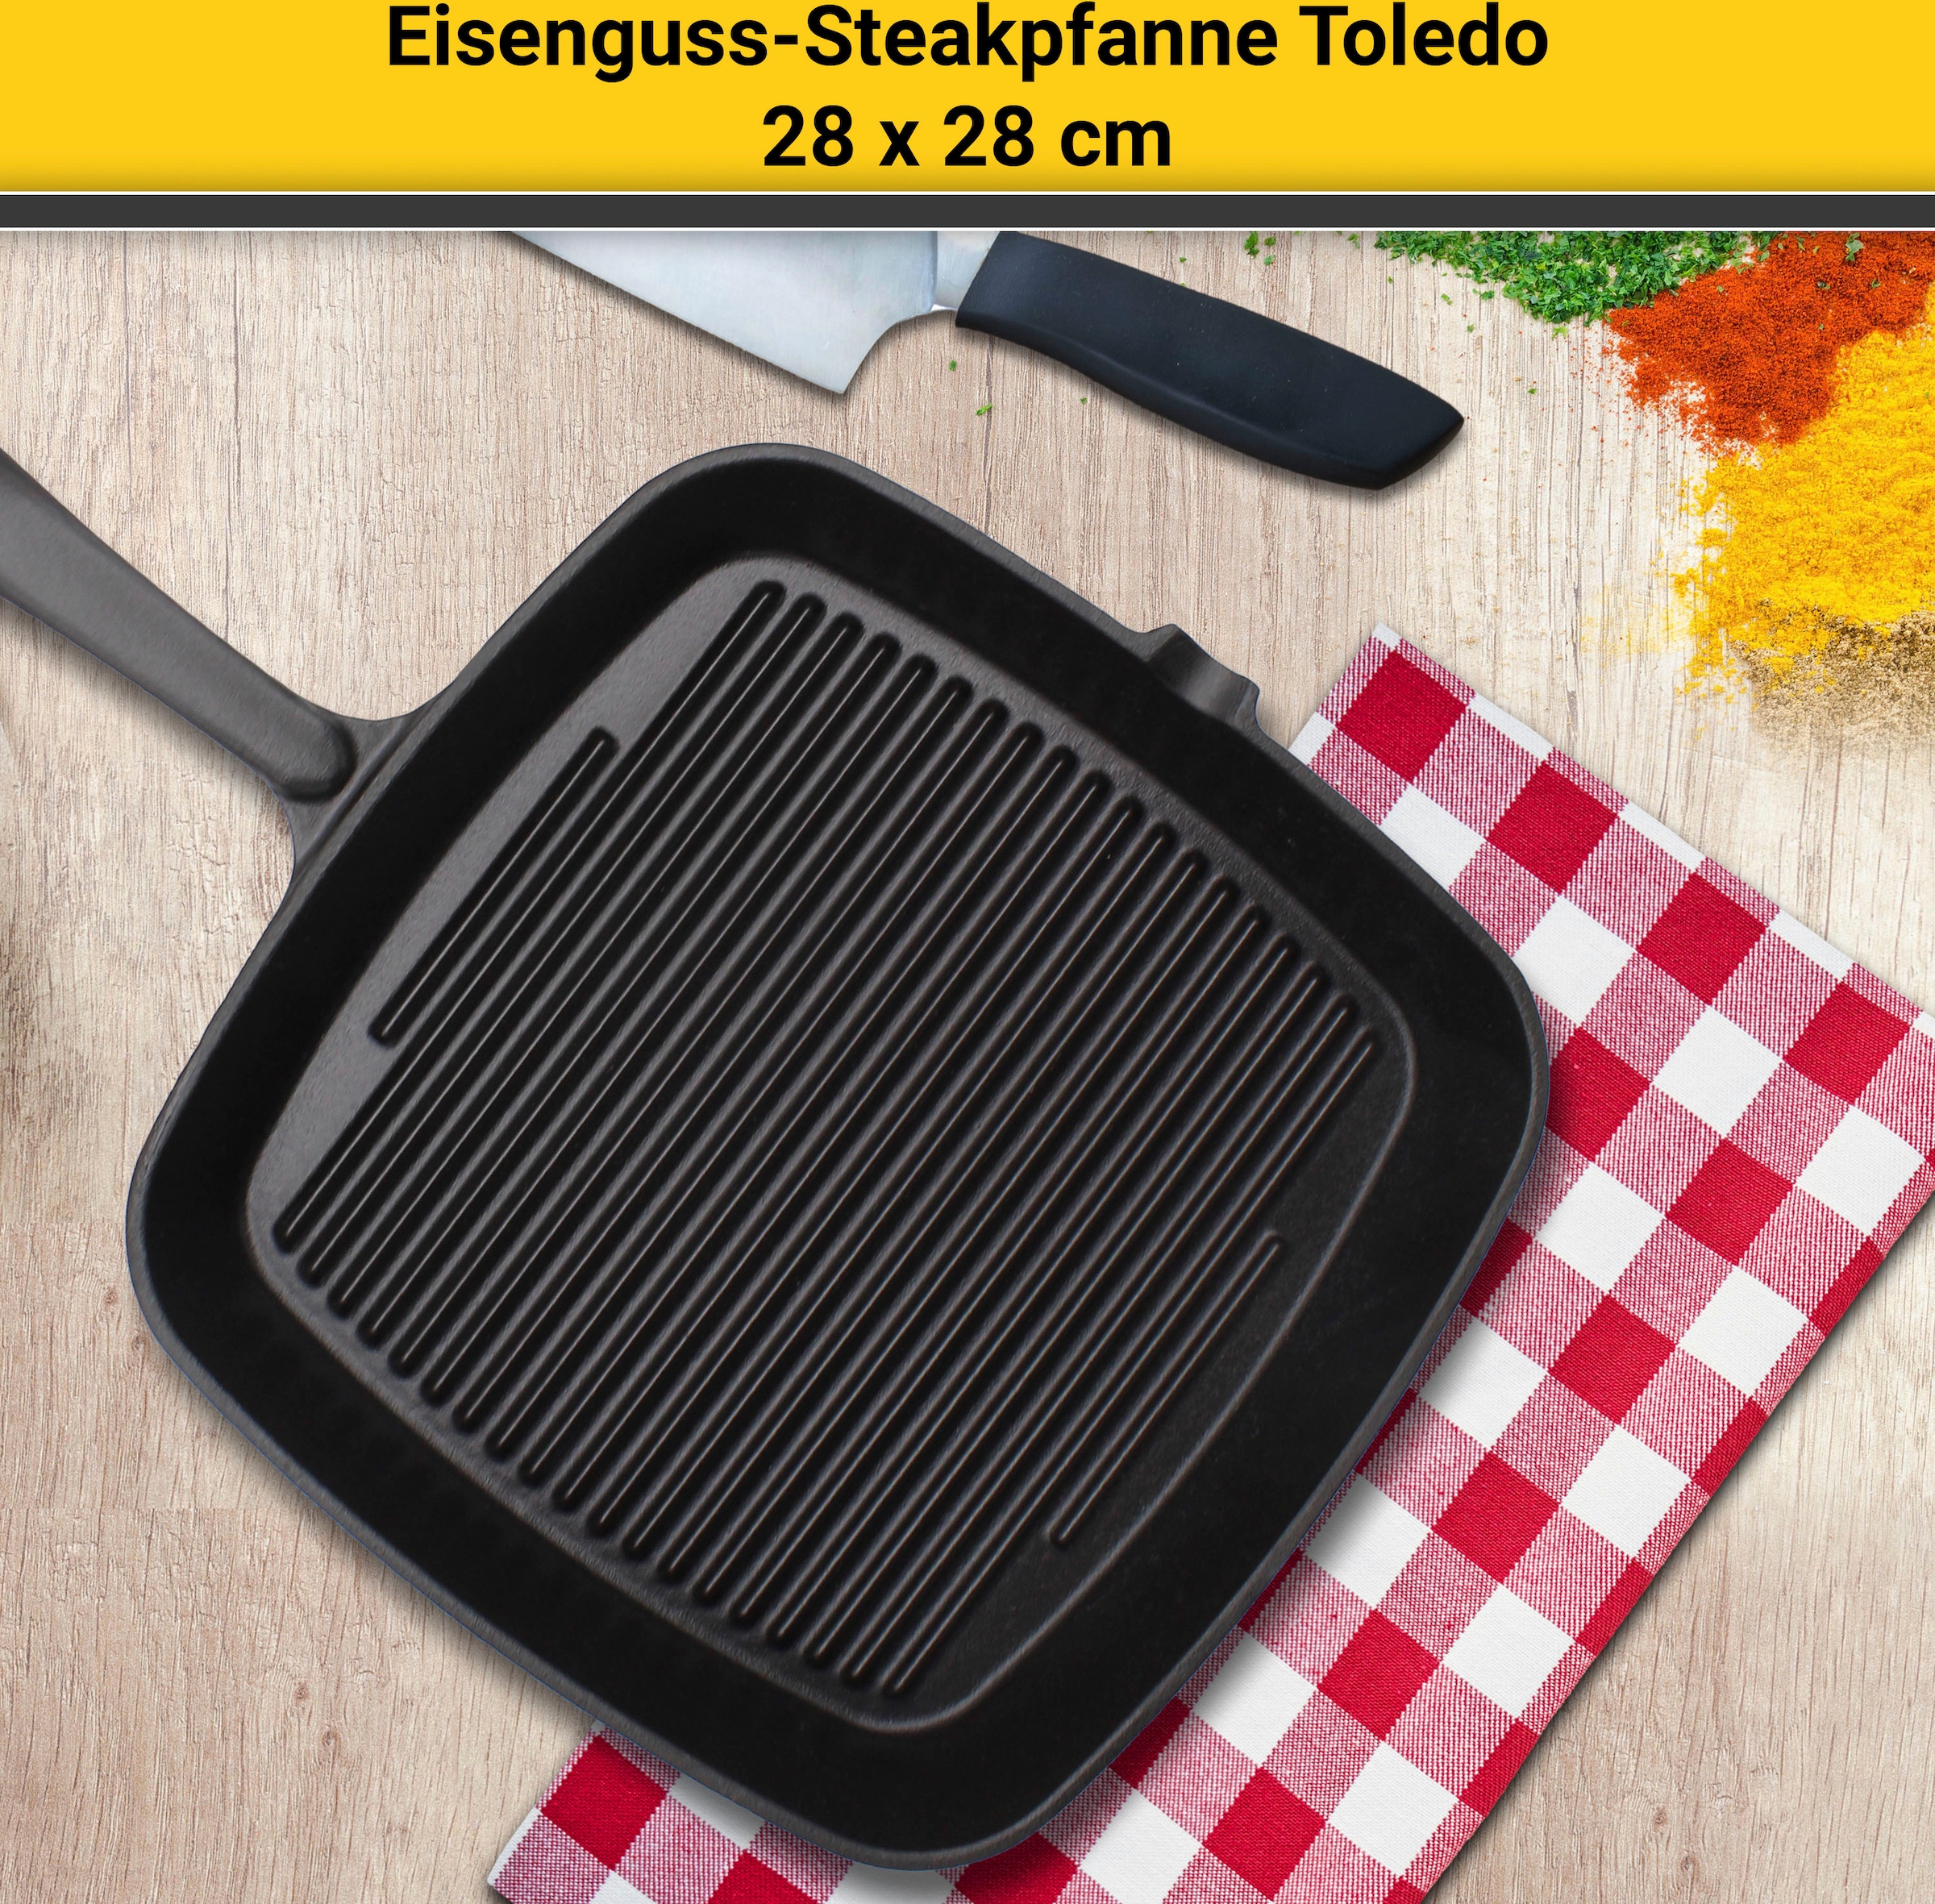 Krüger Steakpfanne »Einsenguss Grill-/ Steakpfanne TOLEDO, 28 x 28cm«, Gusseisen, (1 tlg.), für Induktions-Kochfelder geeignet